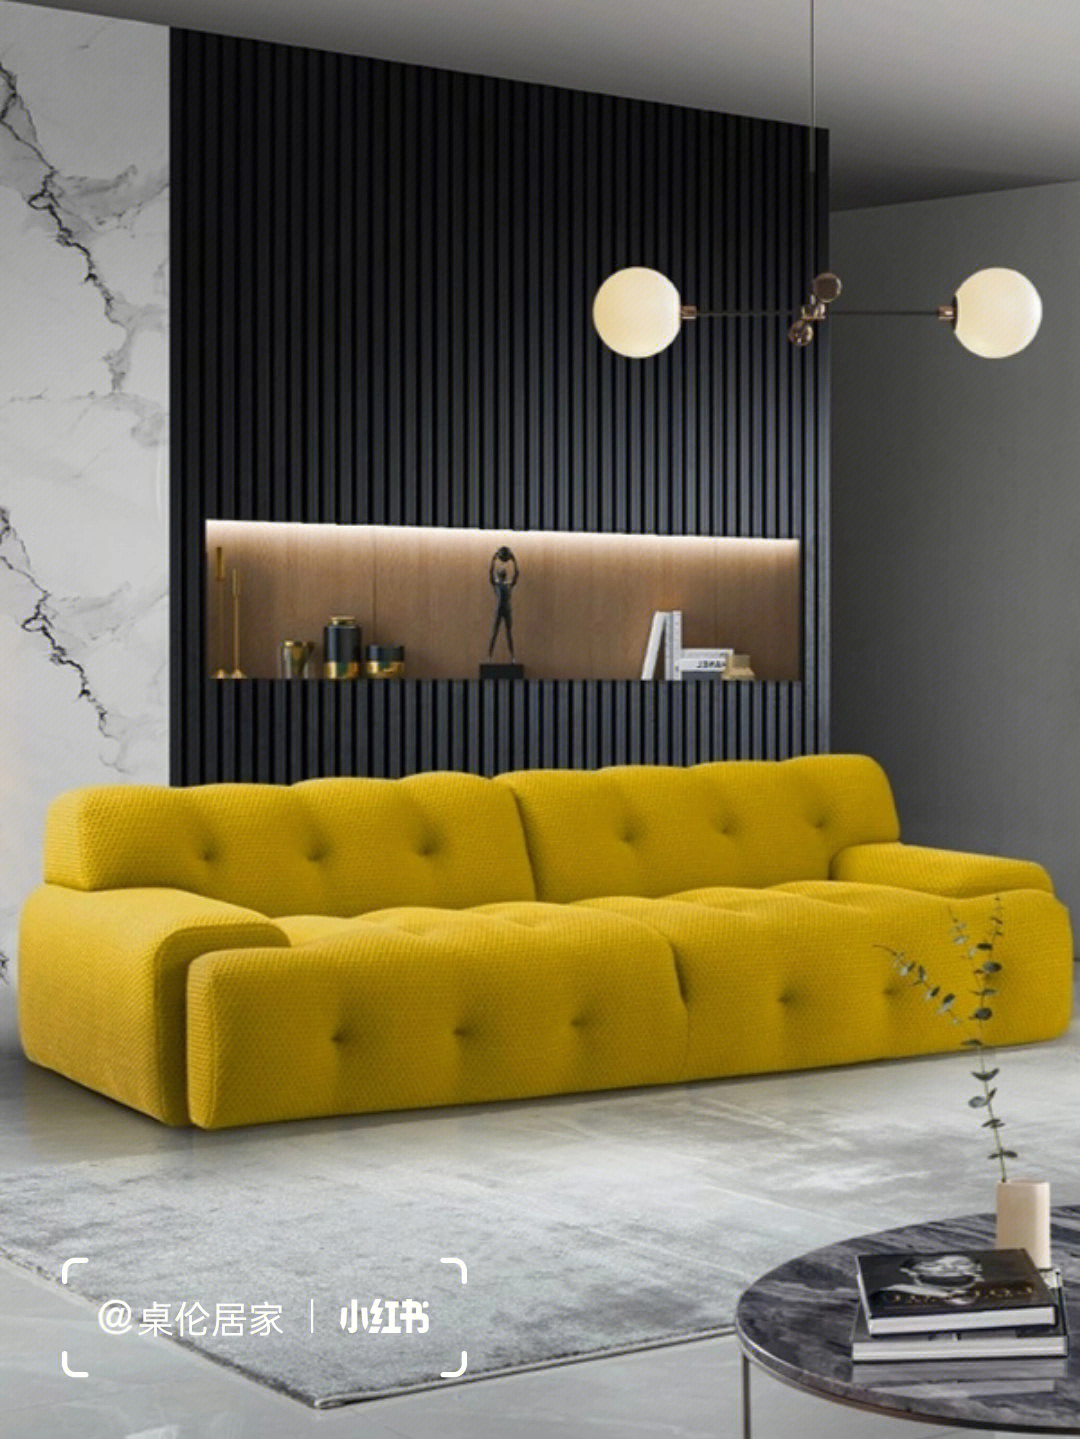 blogger的沙发看起来令人难以置信的舒适和温馨,软垫与结构化且灵活